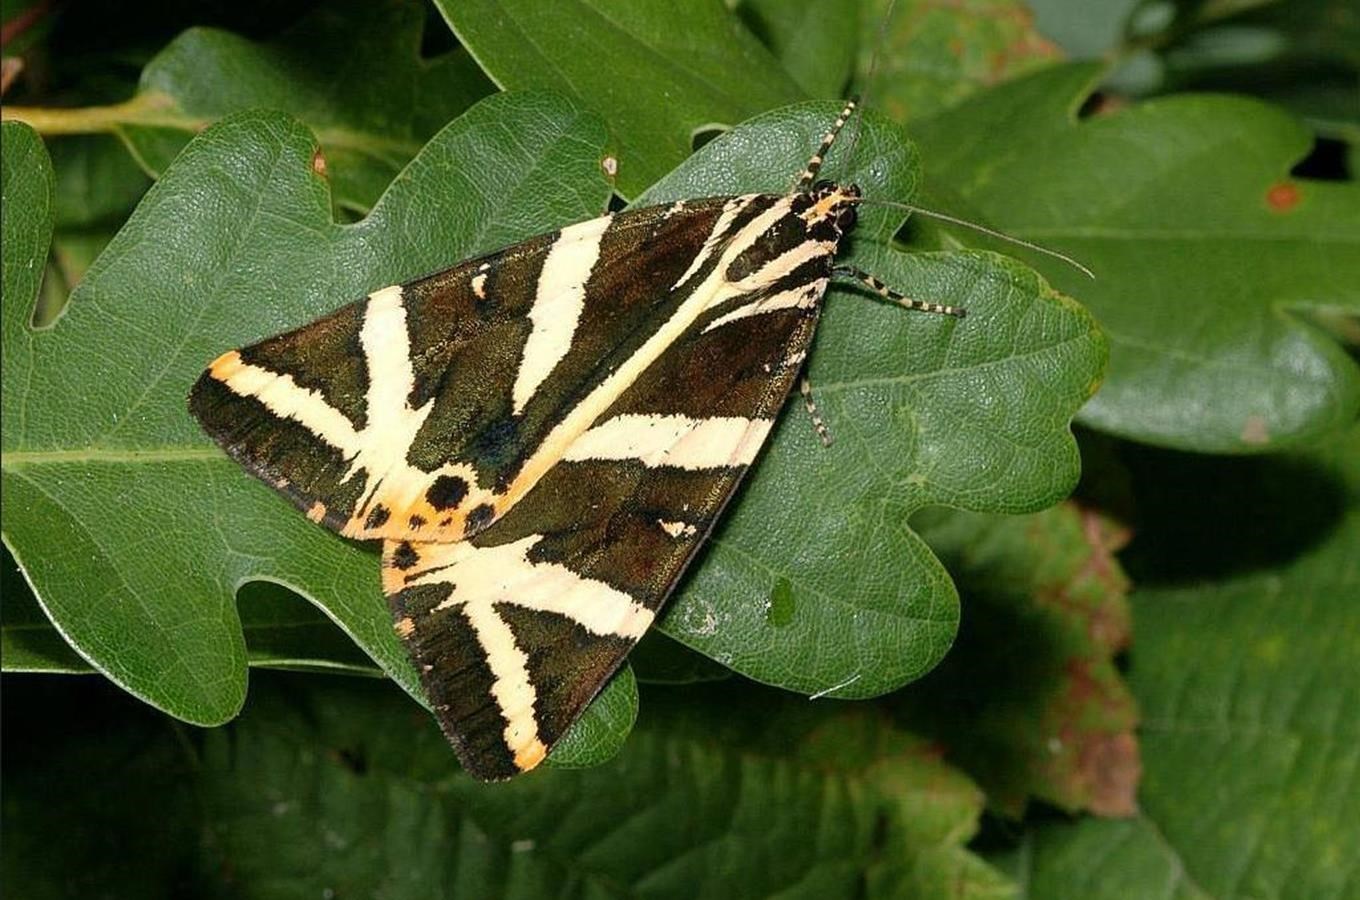 Snad vubec nejvetší zajímavostí Brežanského údolí je však podle entomologu nocní motýl prástevník kostivalový